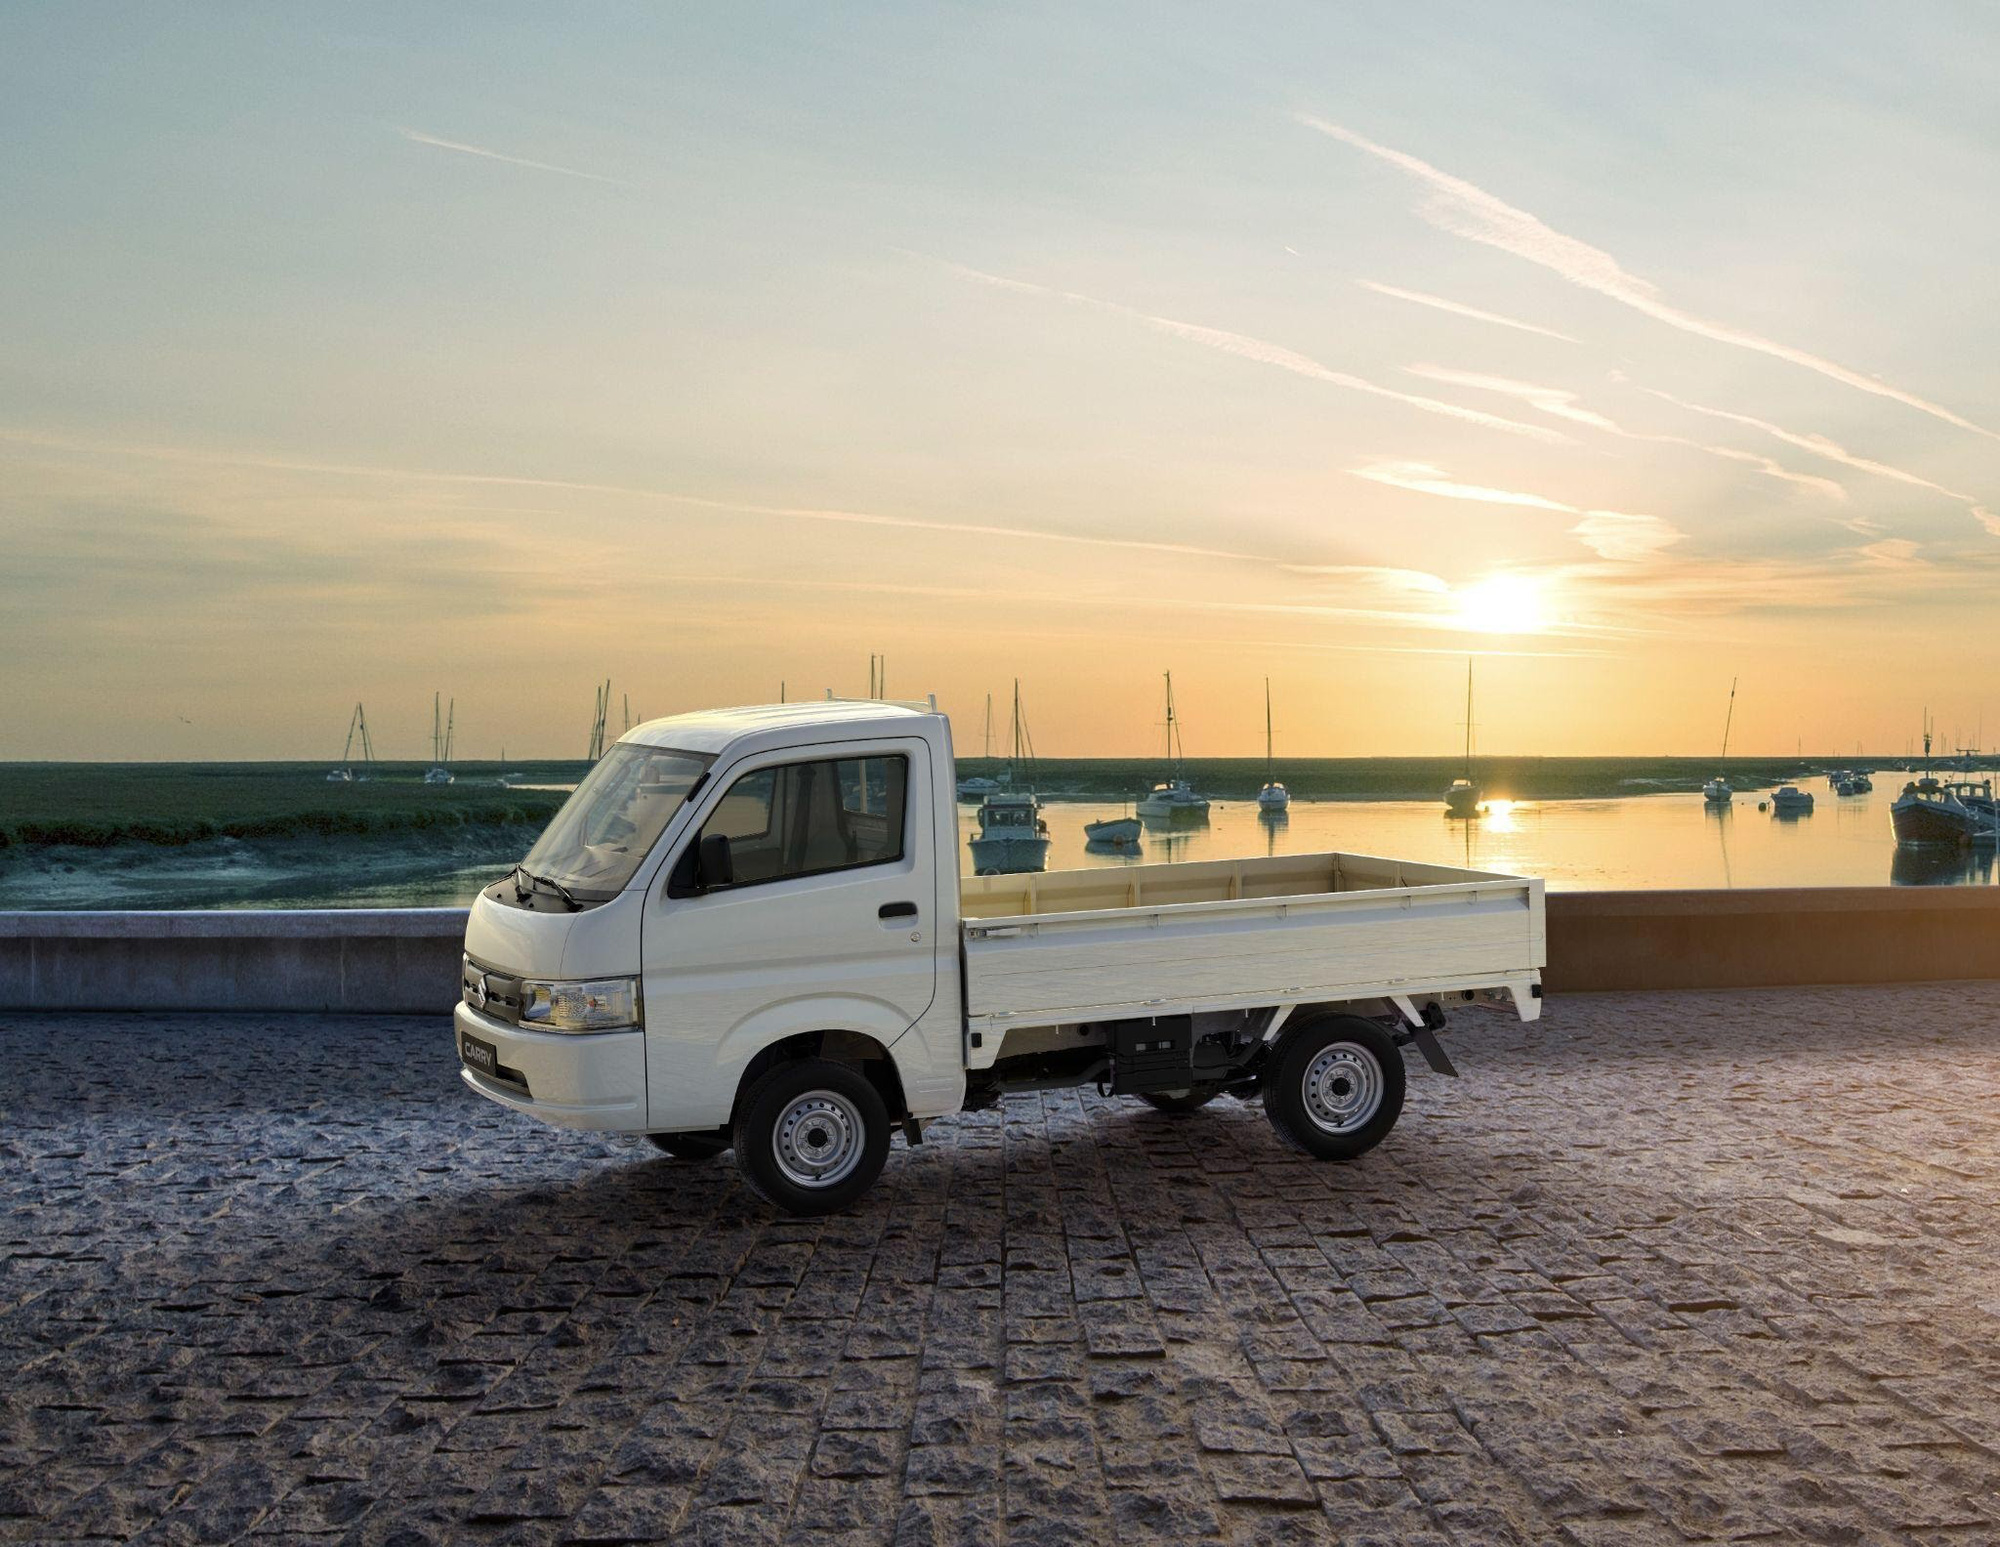 Suzuki tập trung sản xuất nội địa Việt Nam với các mẫu xe tải chất lượng - Ảnh 1.